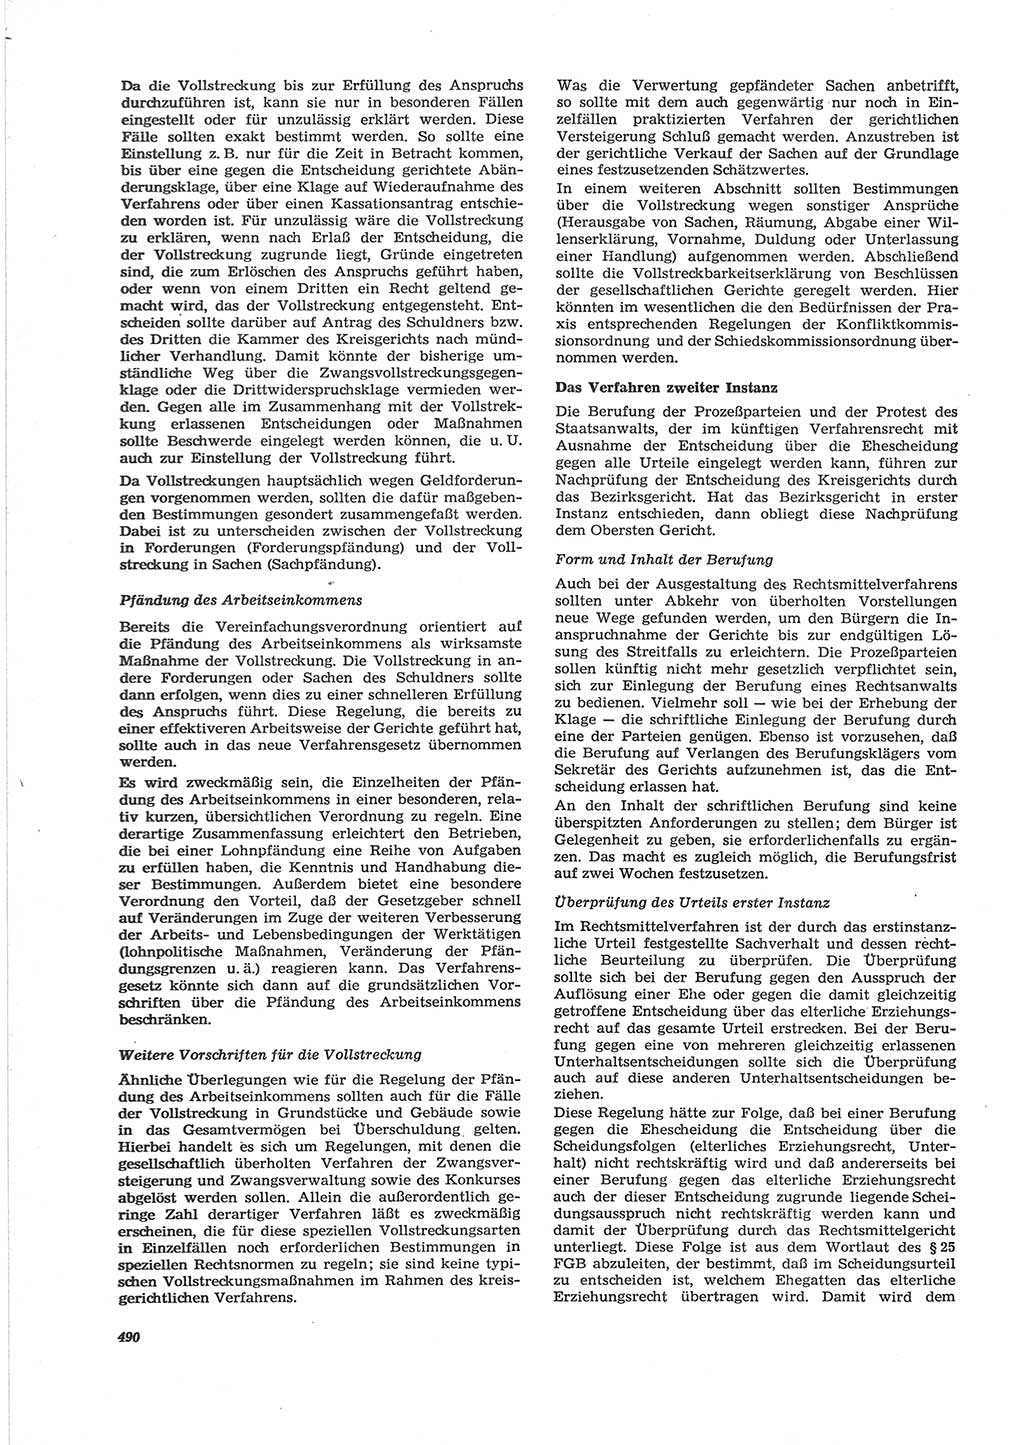 Neue Justiz (NJ), Zeitschrift für Recht und Rechtswissenschaft [Deutsche Demokratische Republik (DDR)], 28. Jahrgang 1974, Seite 490 (NJ DDR 1974, S. 490)